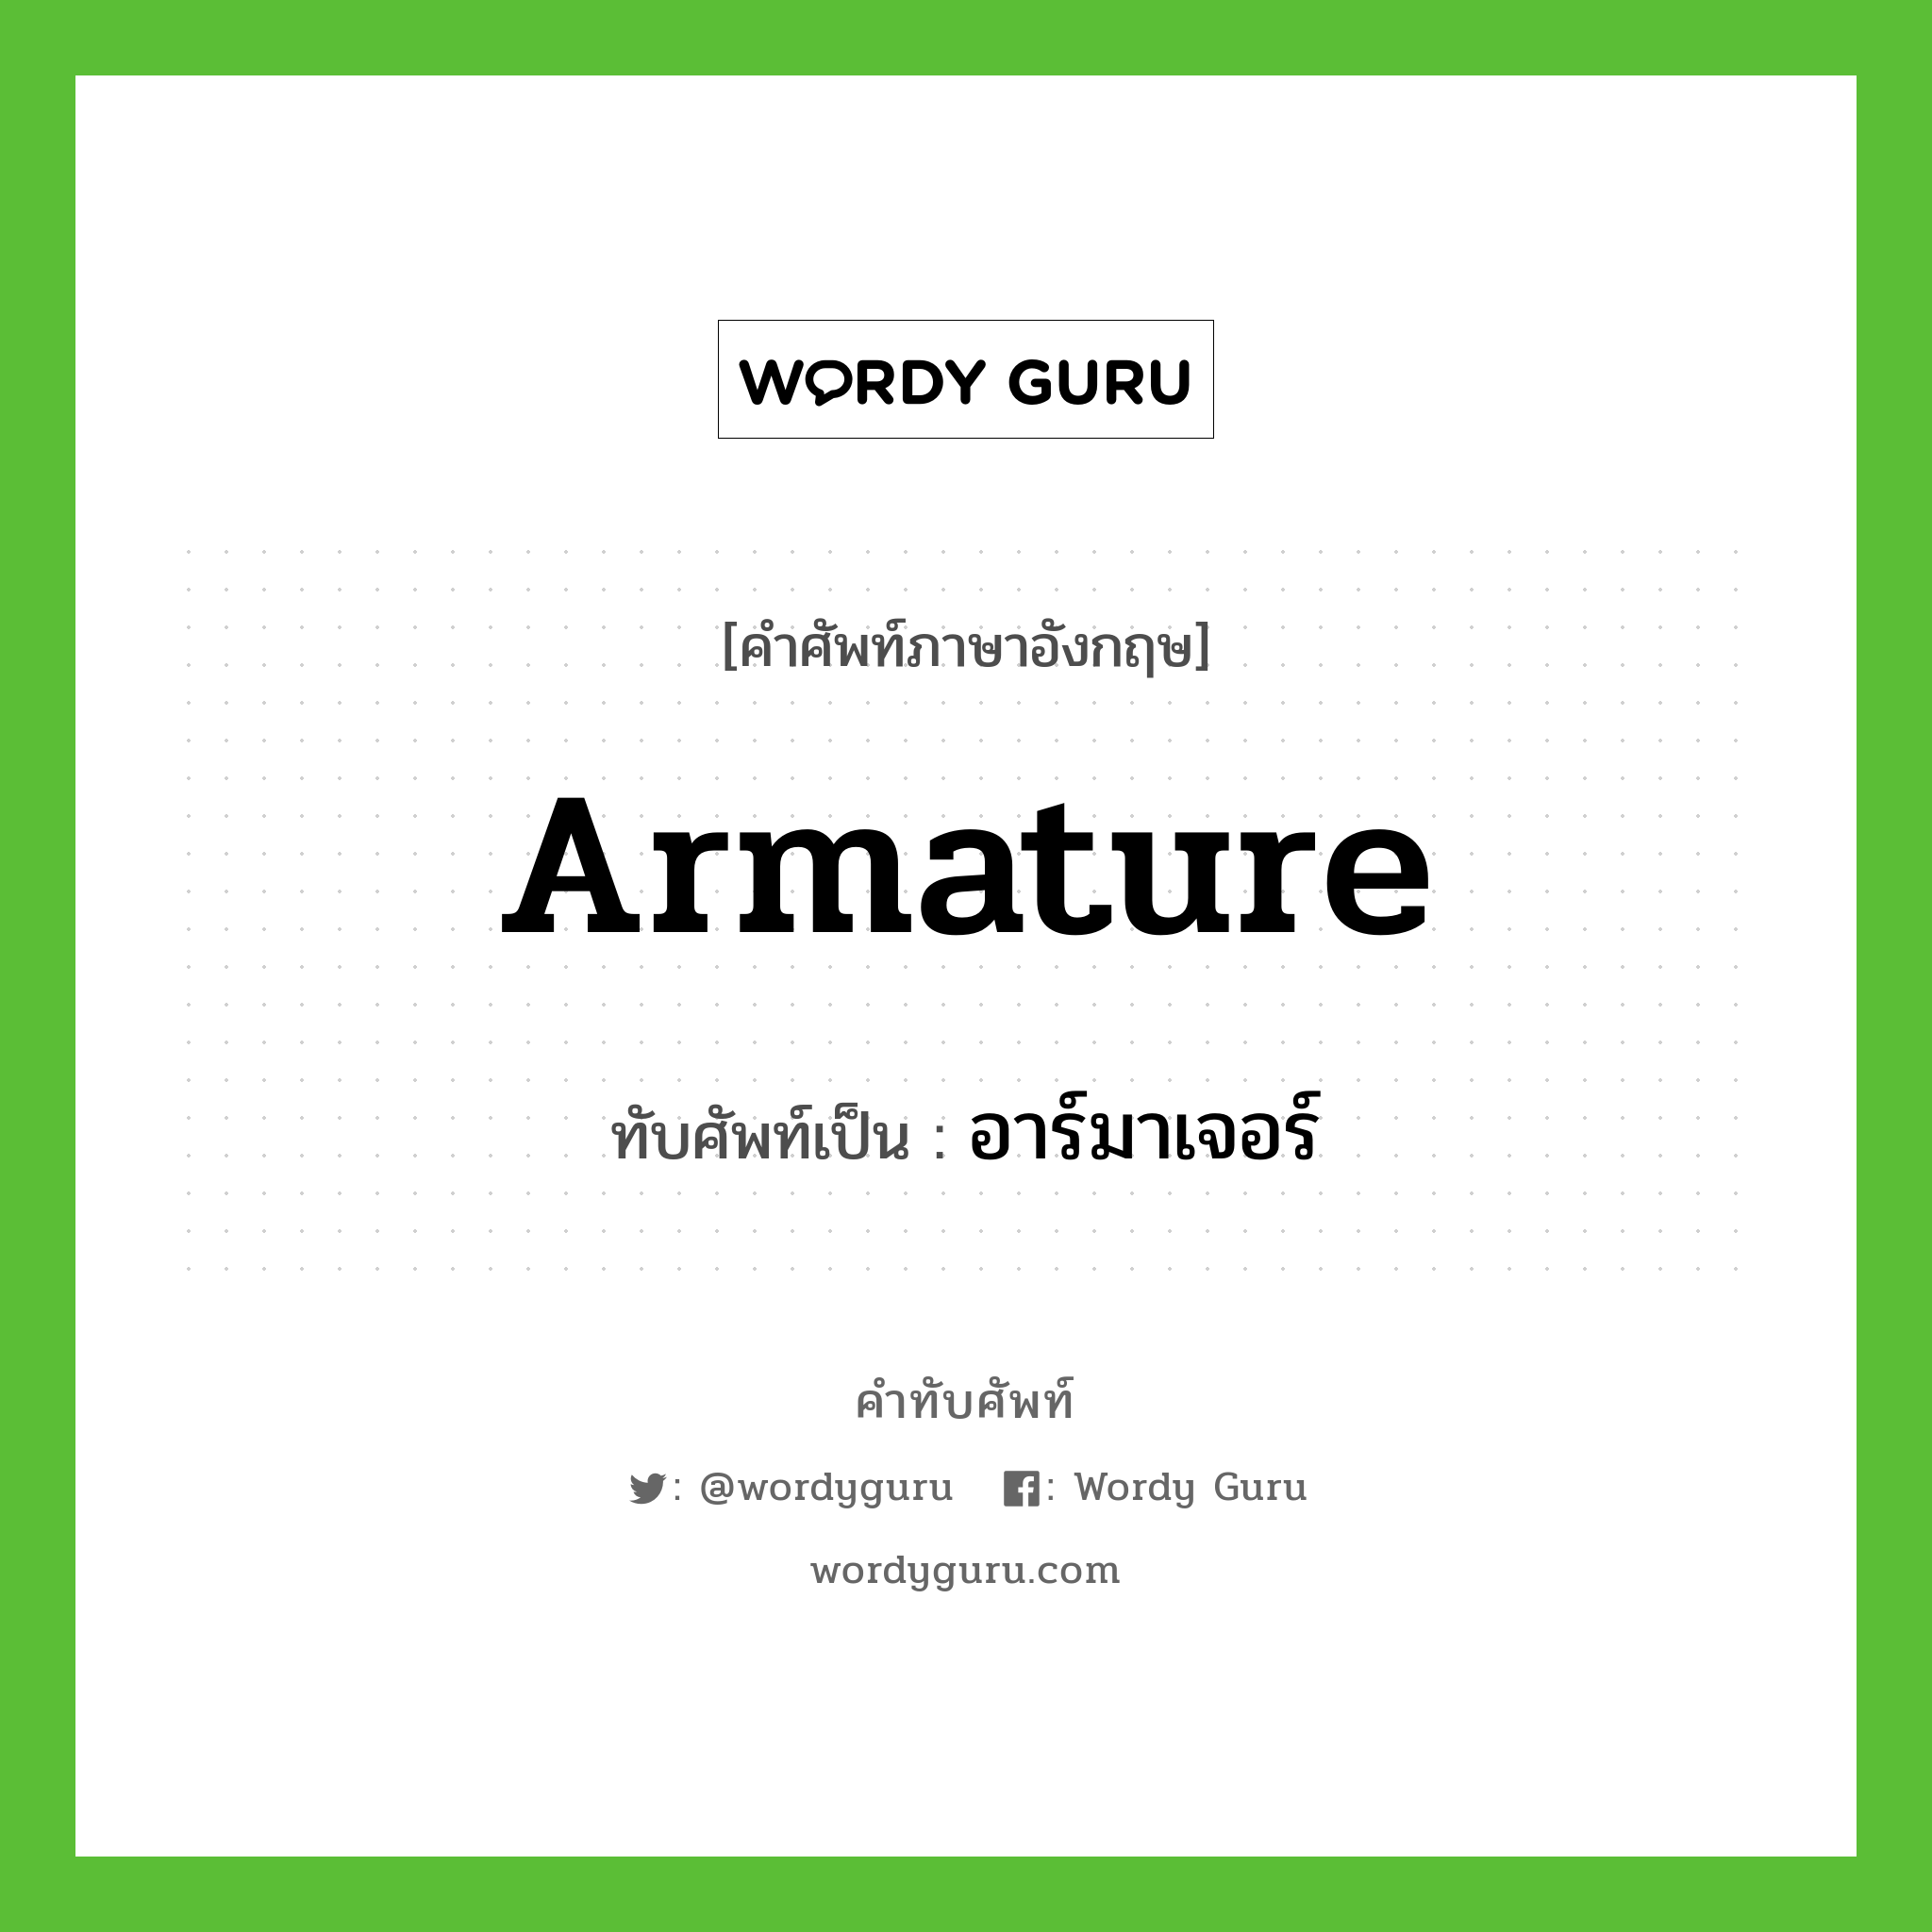 armature เขียนเป็นคำไทยว่าอะไร?, คำศัพท์ภาษาอังกฤษ armature ทับศัพท์เป็น อาร์มาเจอร์